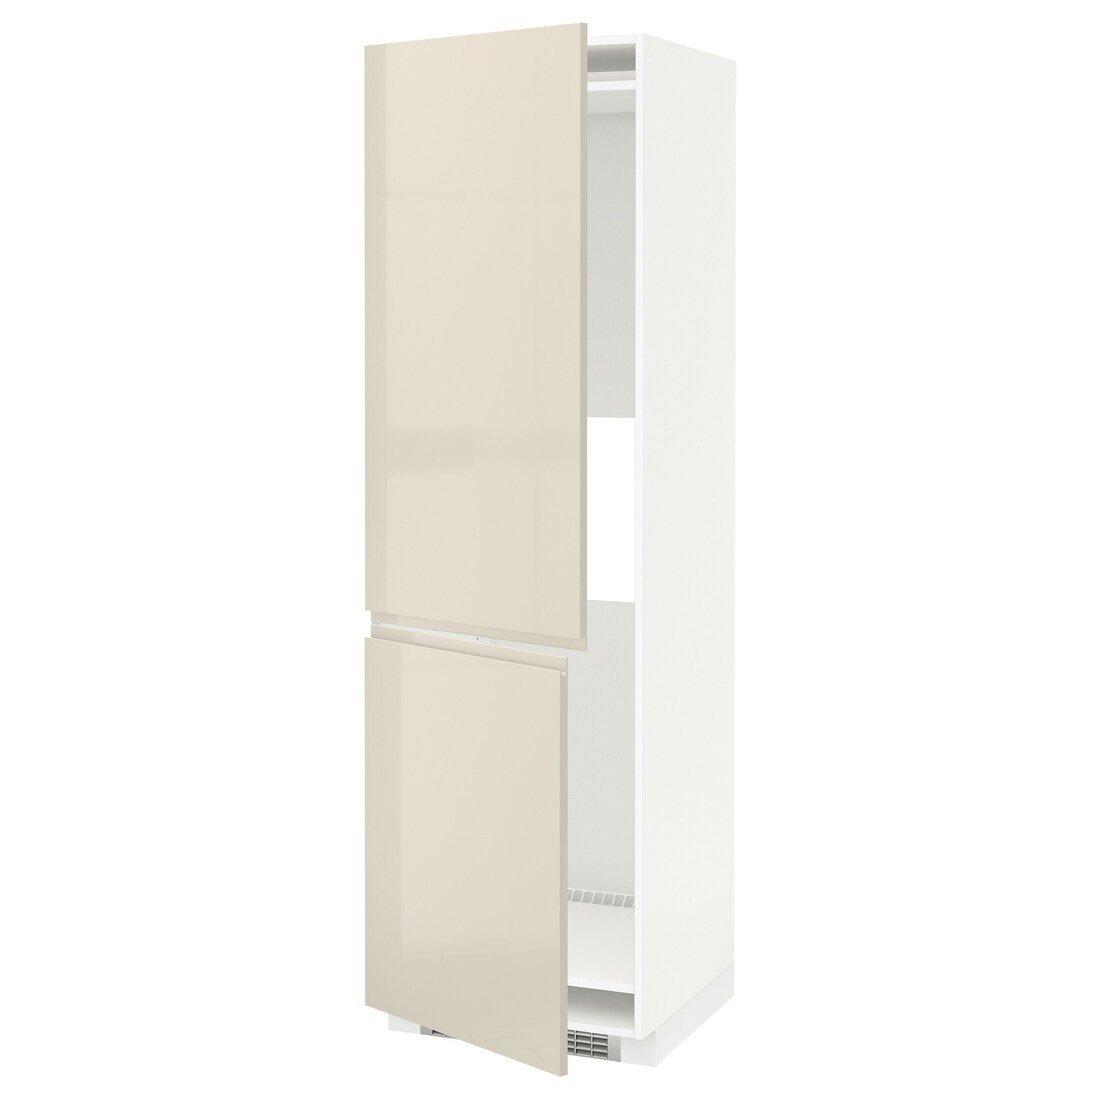 METOD МЕТОД Высокий шкаф для холодильника / морозильника, белый / Voxtorp глянцевый светло-бежевый, 60x60x200 см